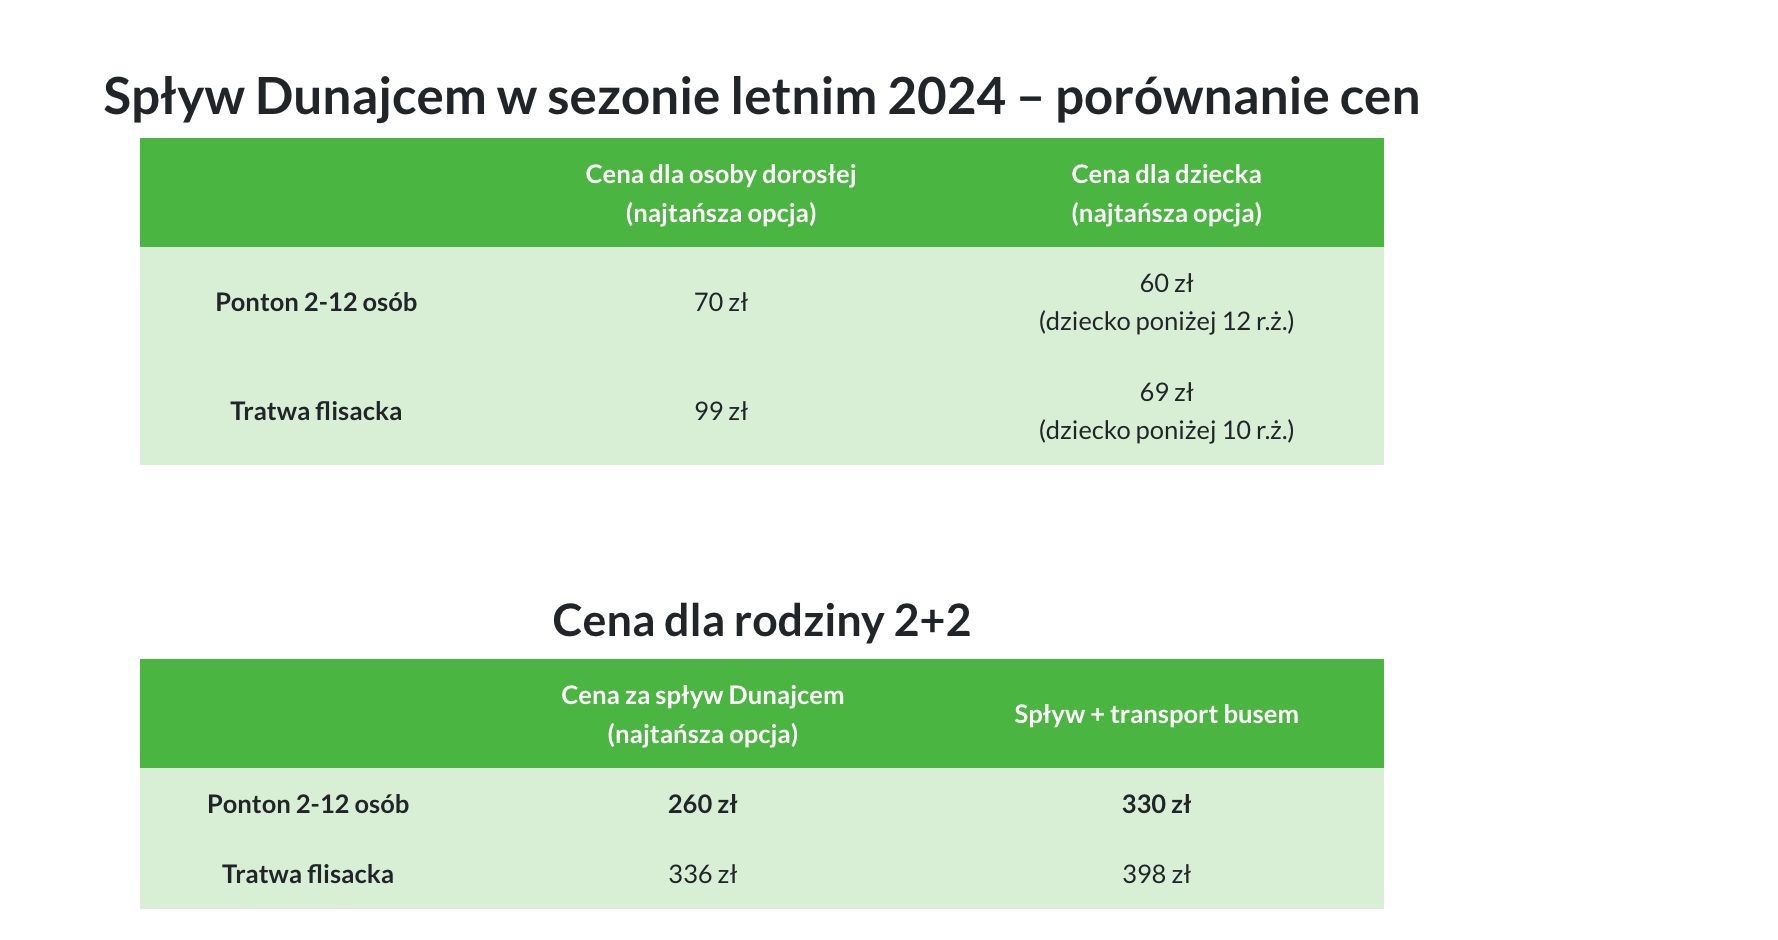 Spływ Dunajcem cennik - porównanie cen Portu Pienin i Flisaków